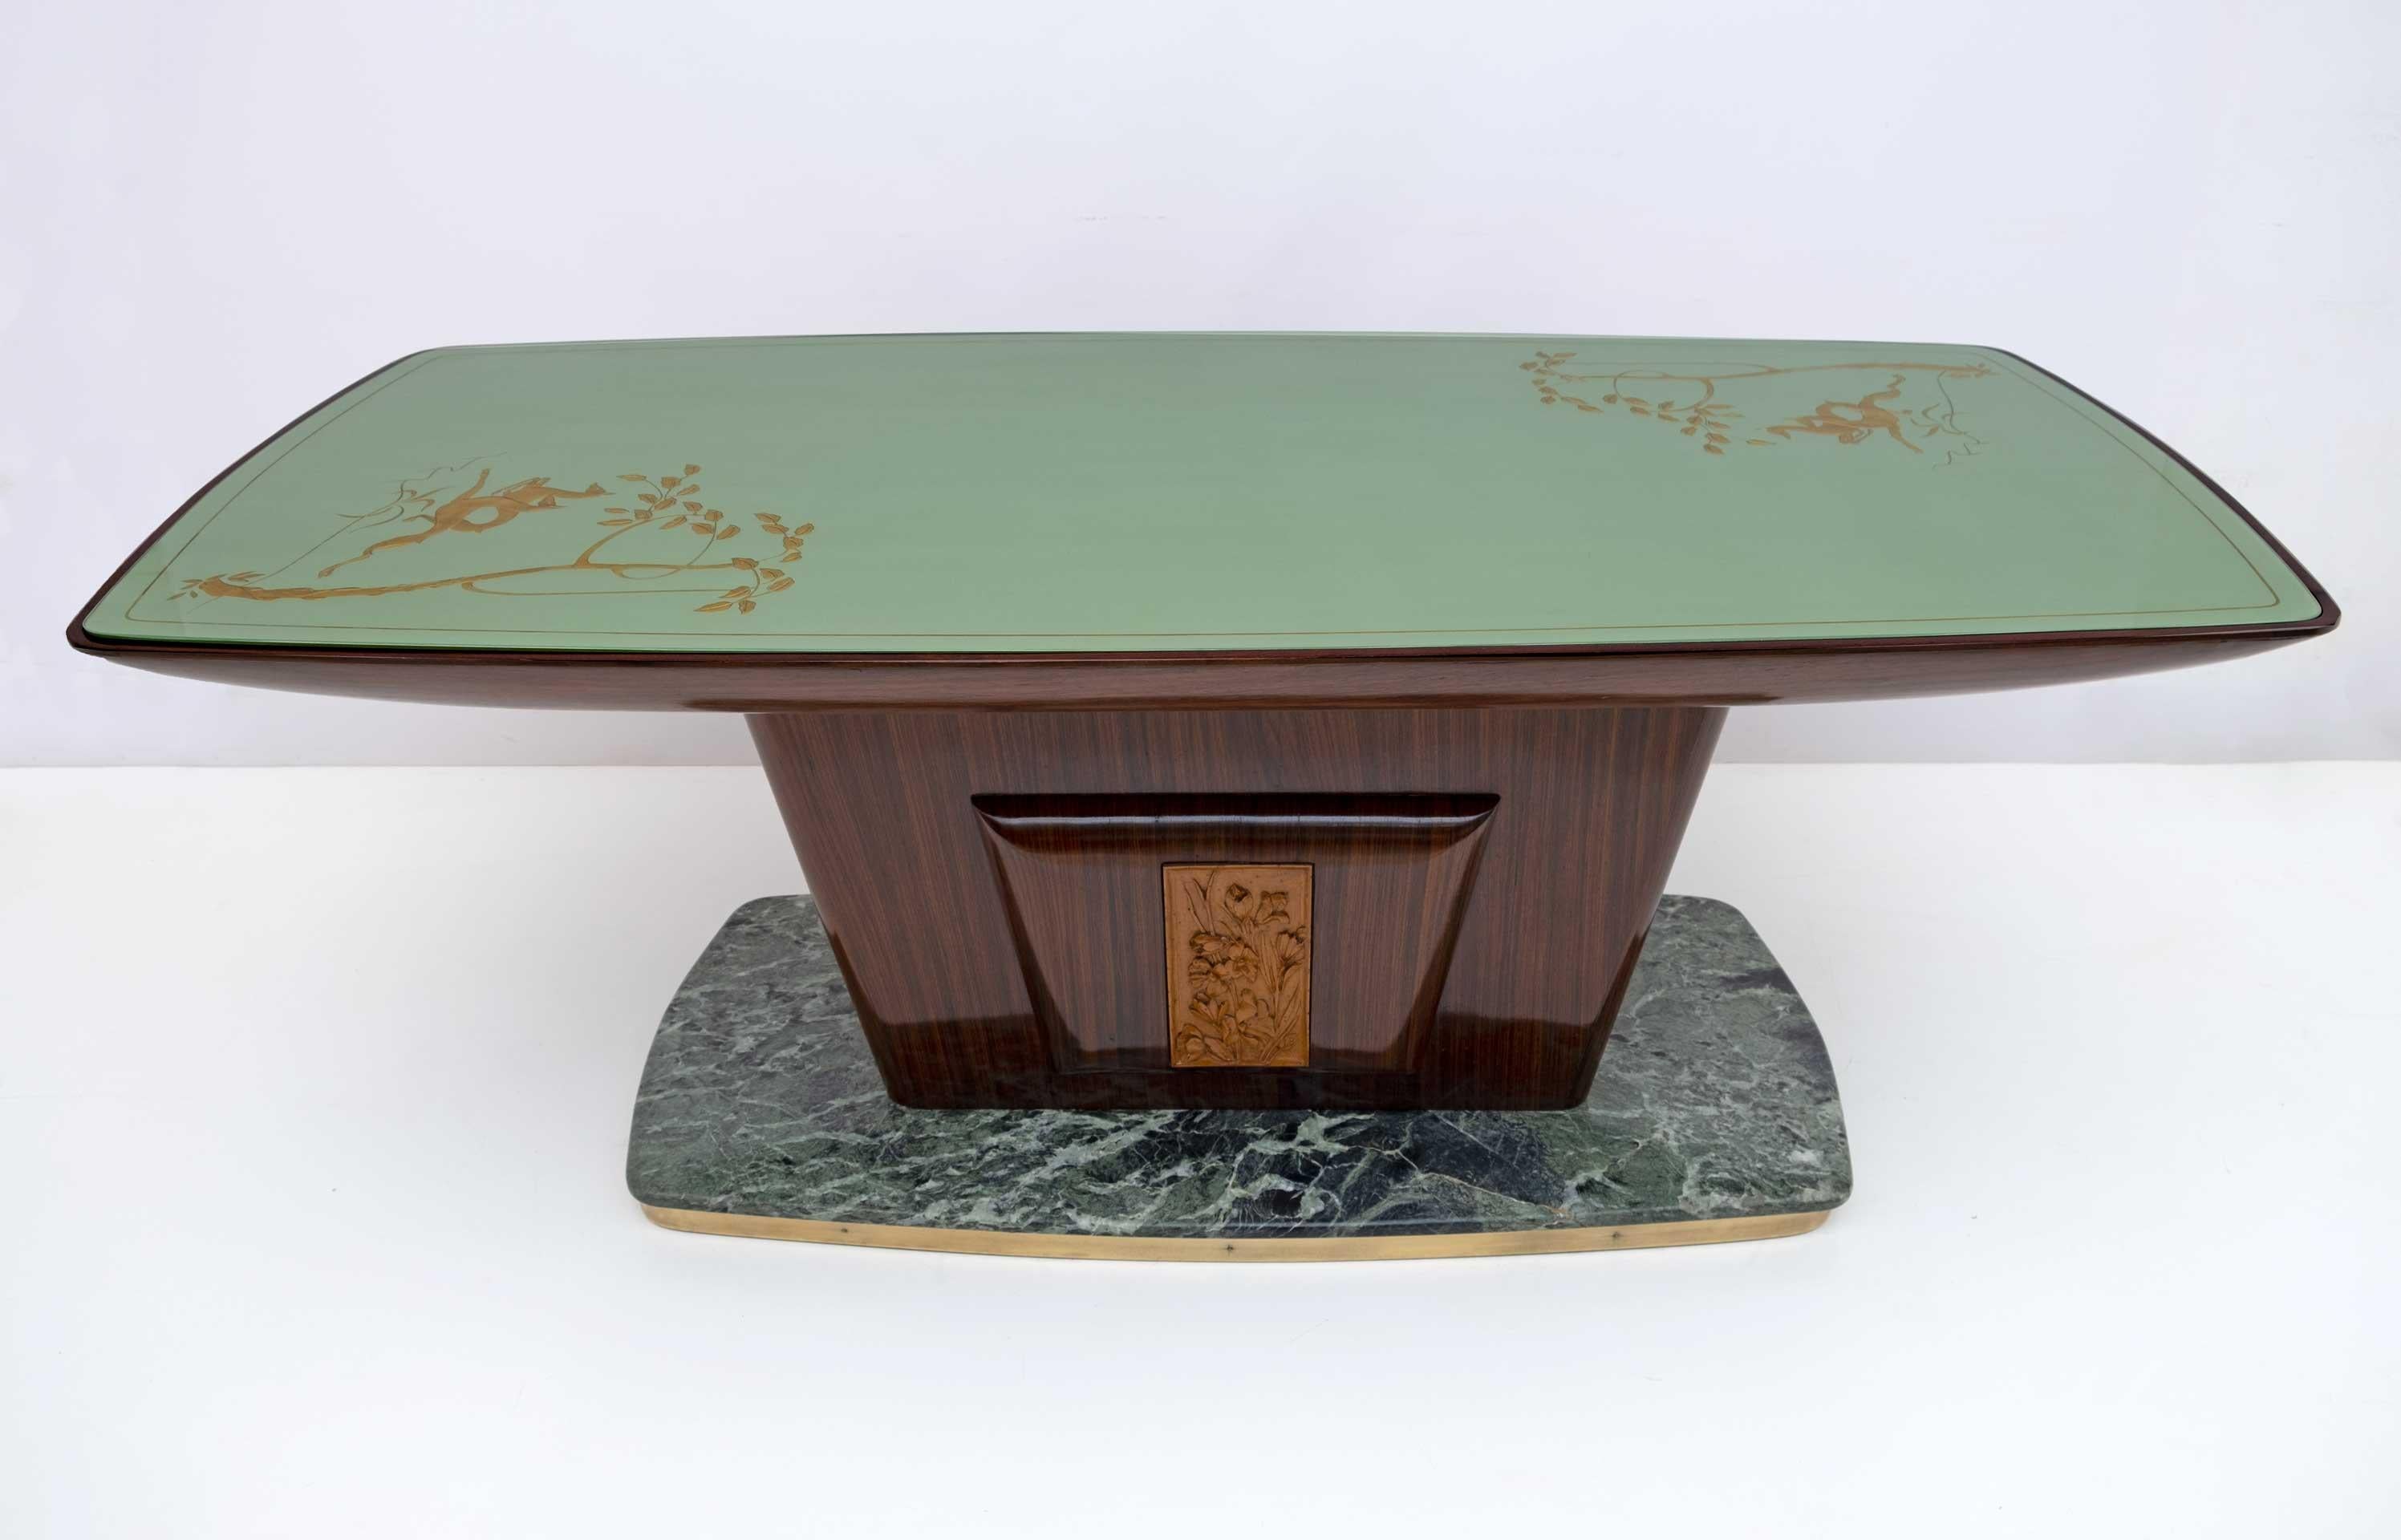 Schöner Tisch des berühmten italienischen Designers Vittorio Dassi aus der Jahrhundertmitte, 1950.
Die außergewöhnlichen Holzarbeiten werden durch die geschwungene grüne Glasplatte mit Blattgoldverzierungen und die abgerundeten Kanten der darunter